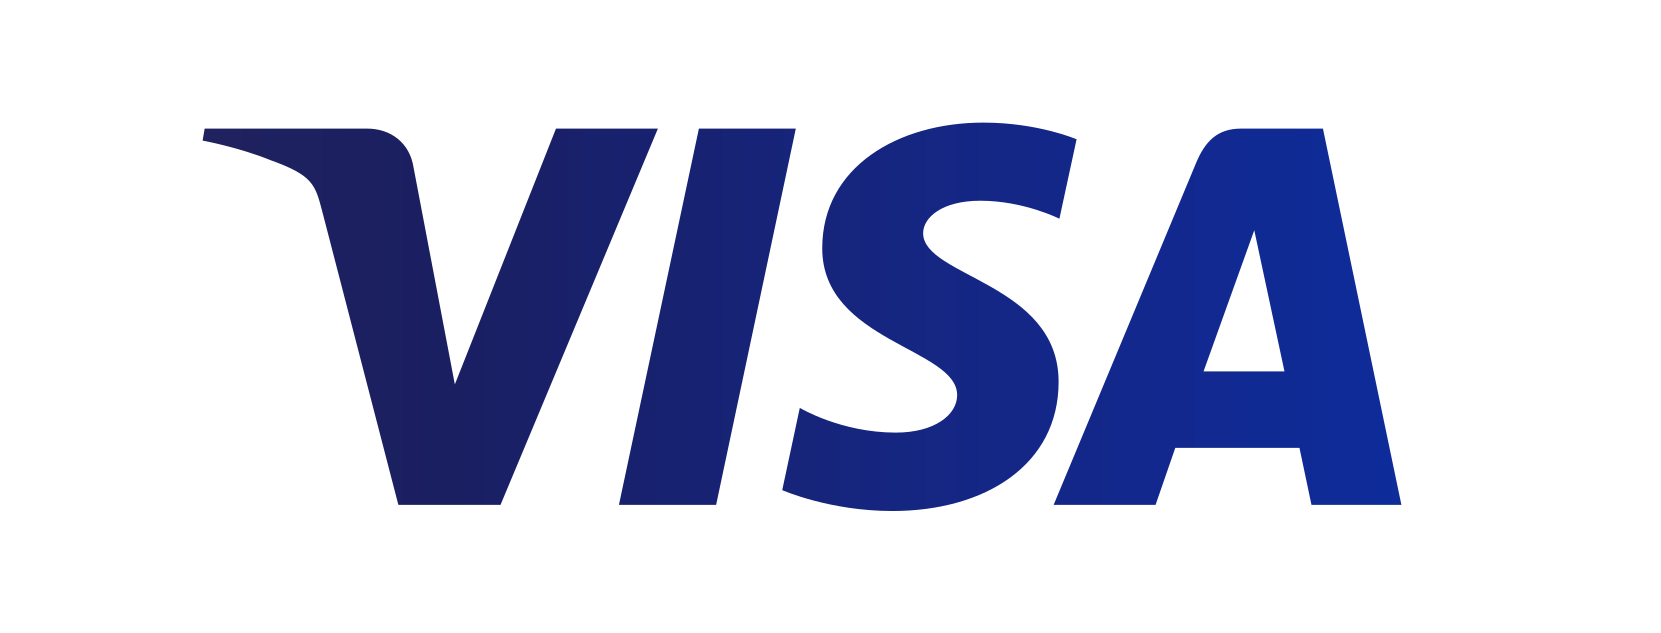 VISA & MasterCard